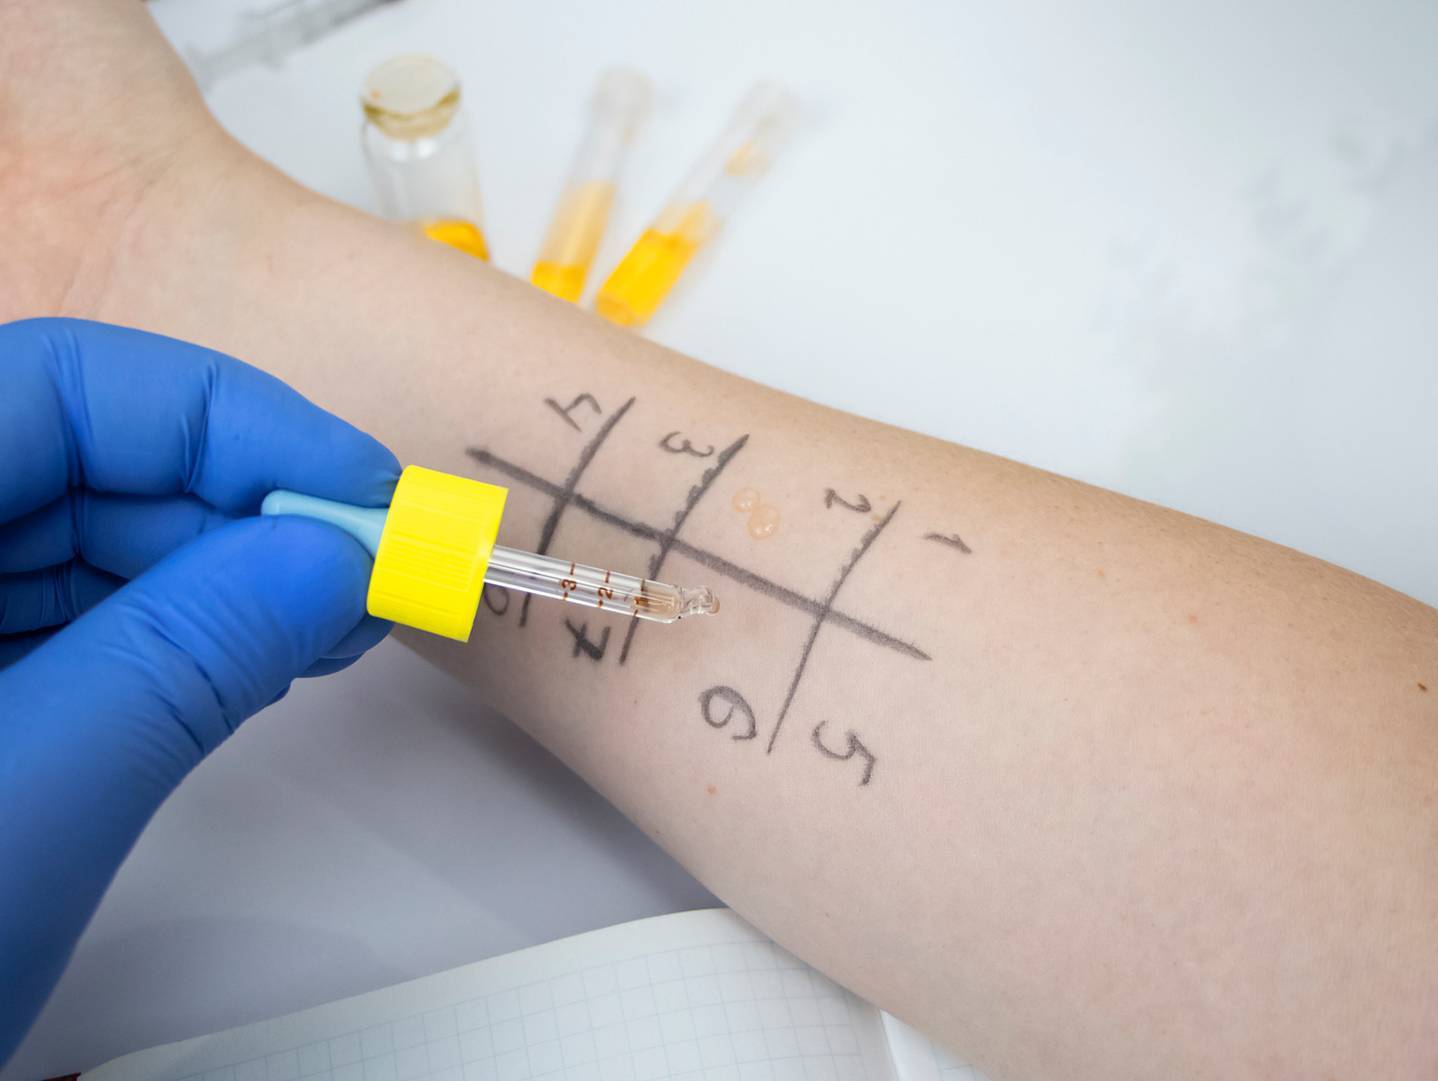 Lékař provádí kožní prick test na alergie. Kapky různých alergenů aplikuje do mřížky nakreslené na předloktí pacienta.